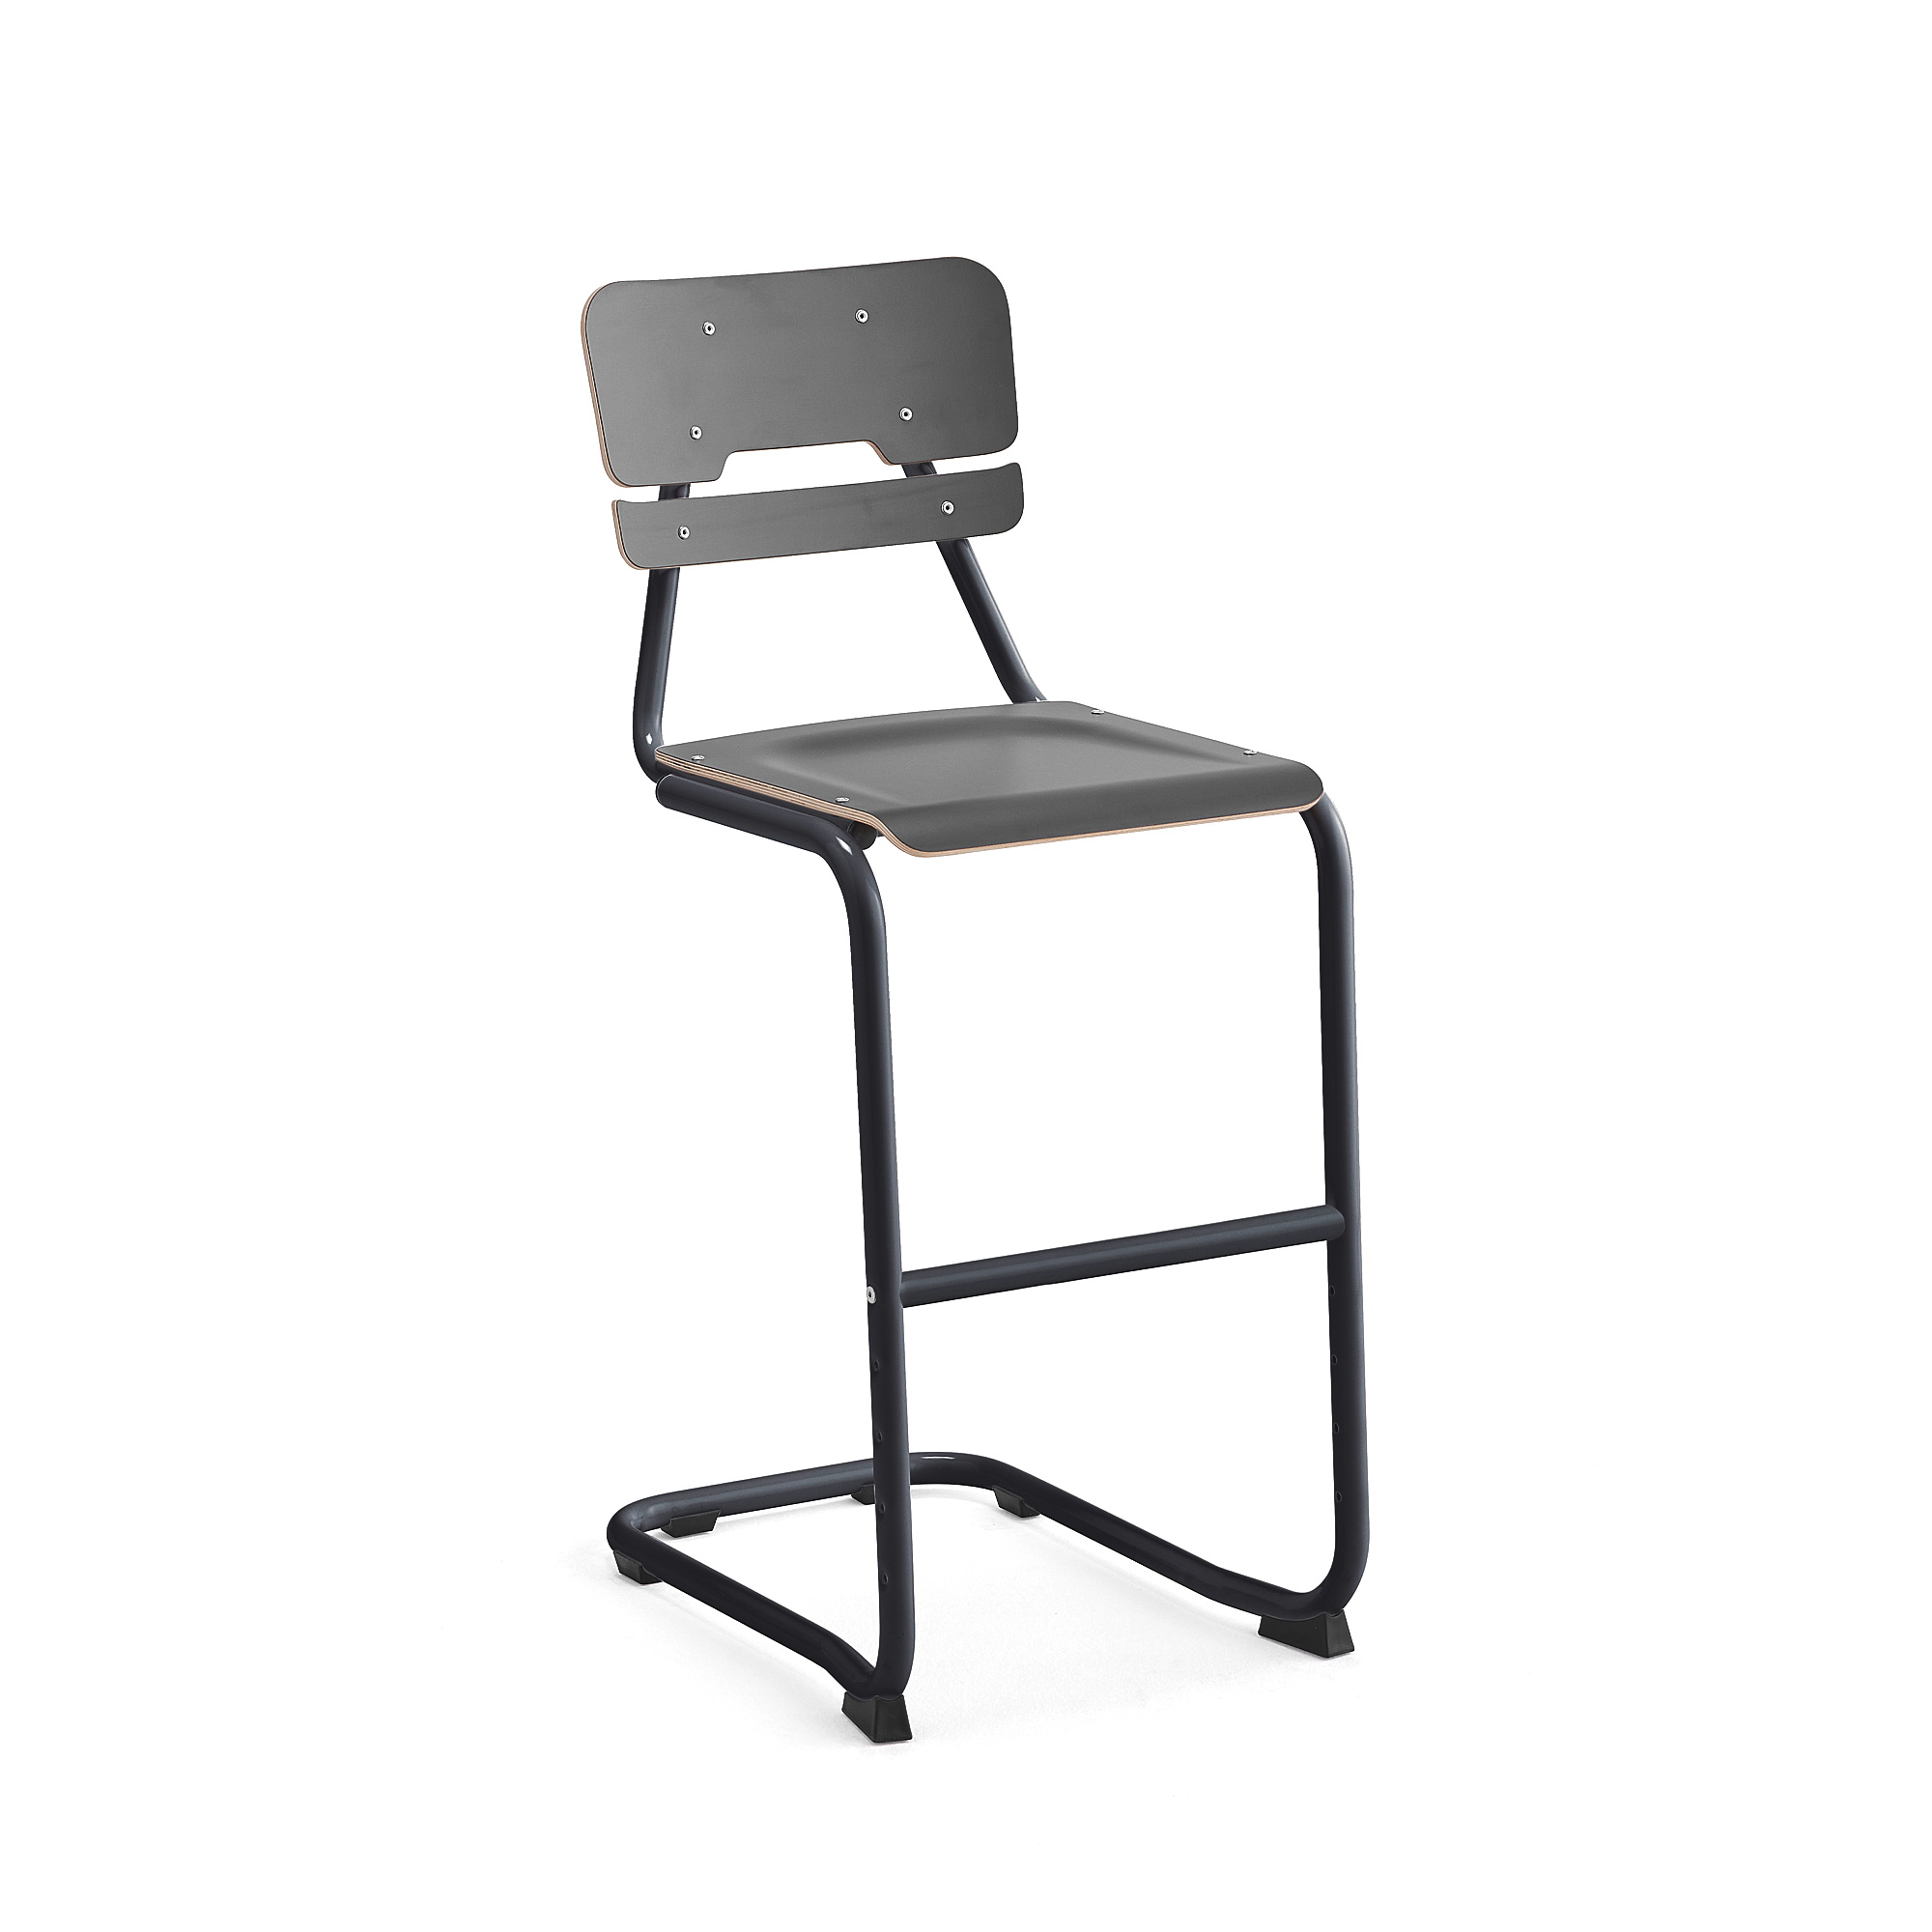 Školní židle LEGERE I, výška 650 mm, antracitově šedá, antracitově šedá